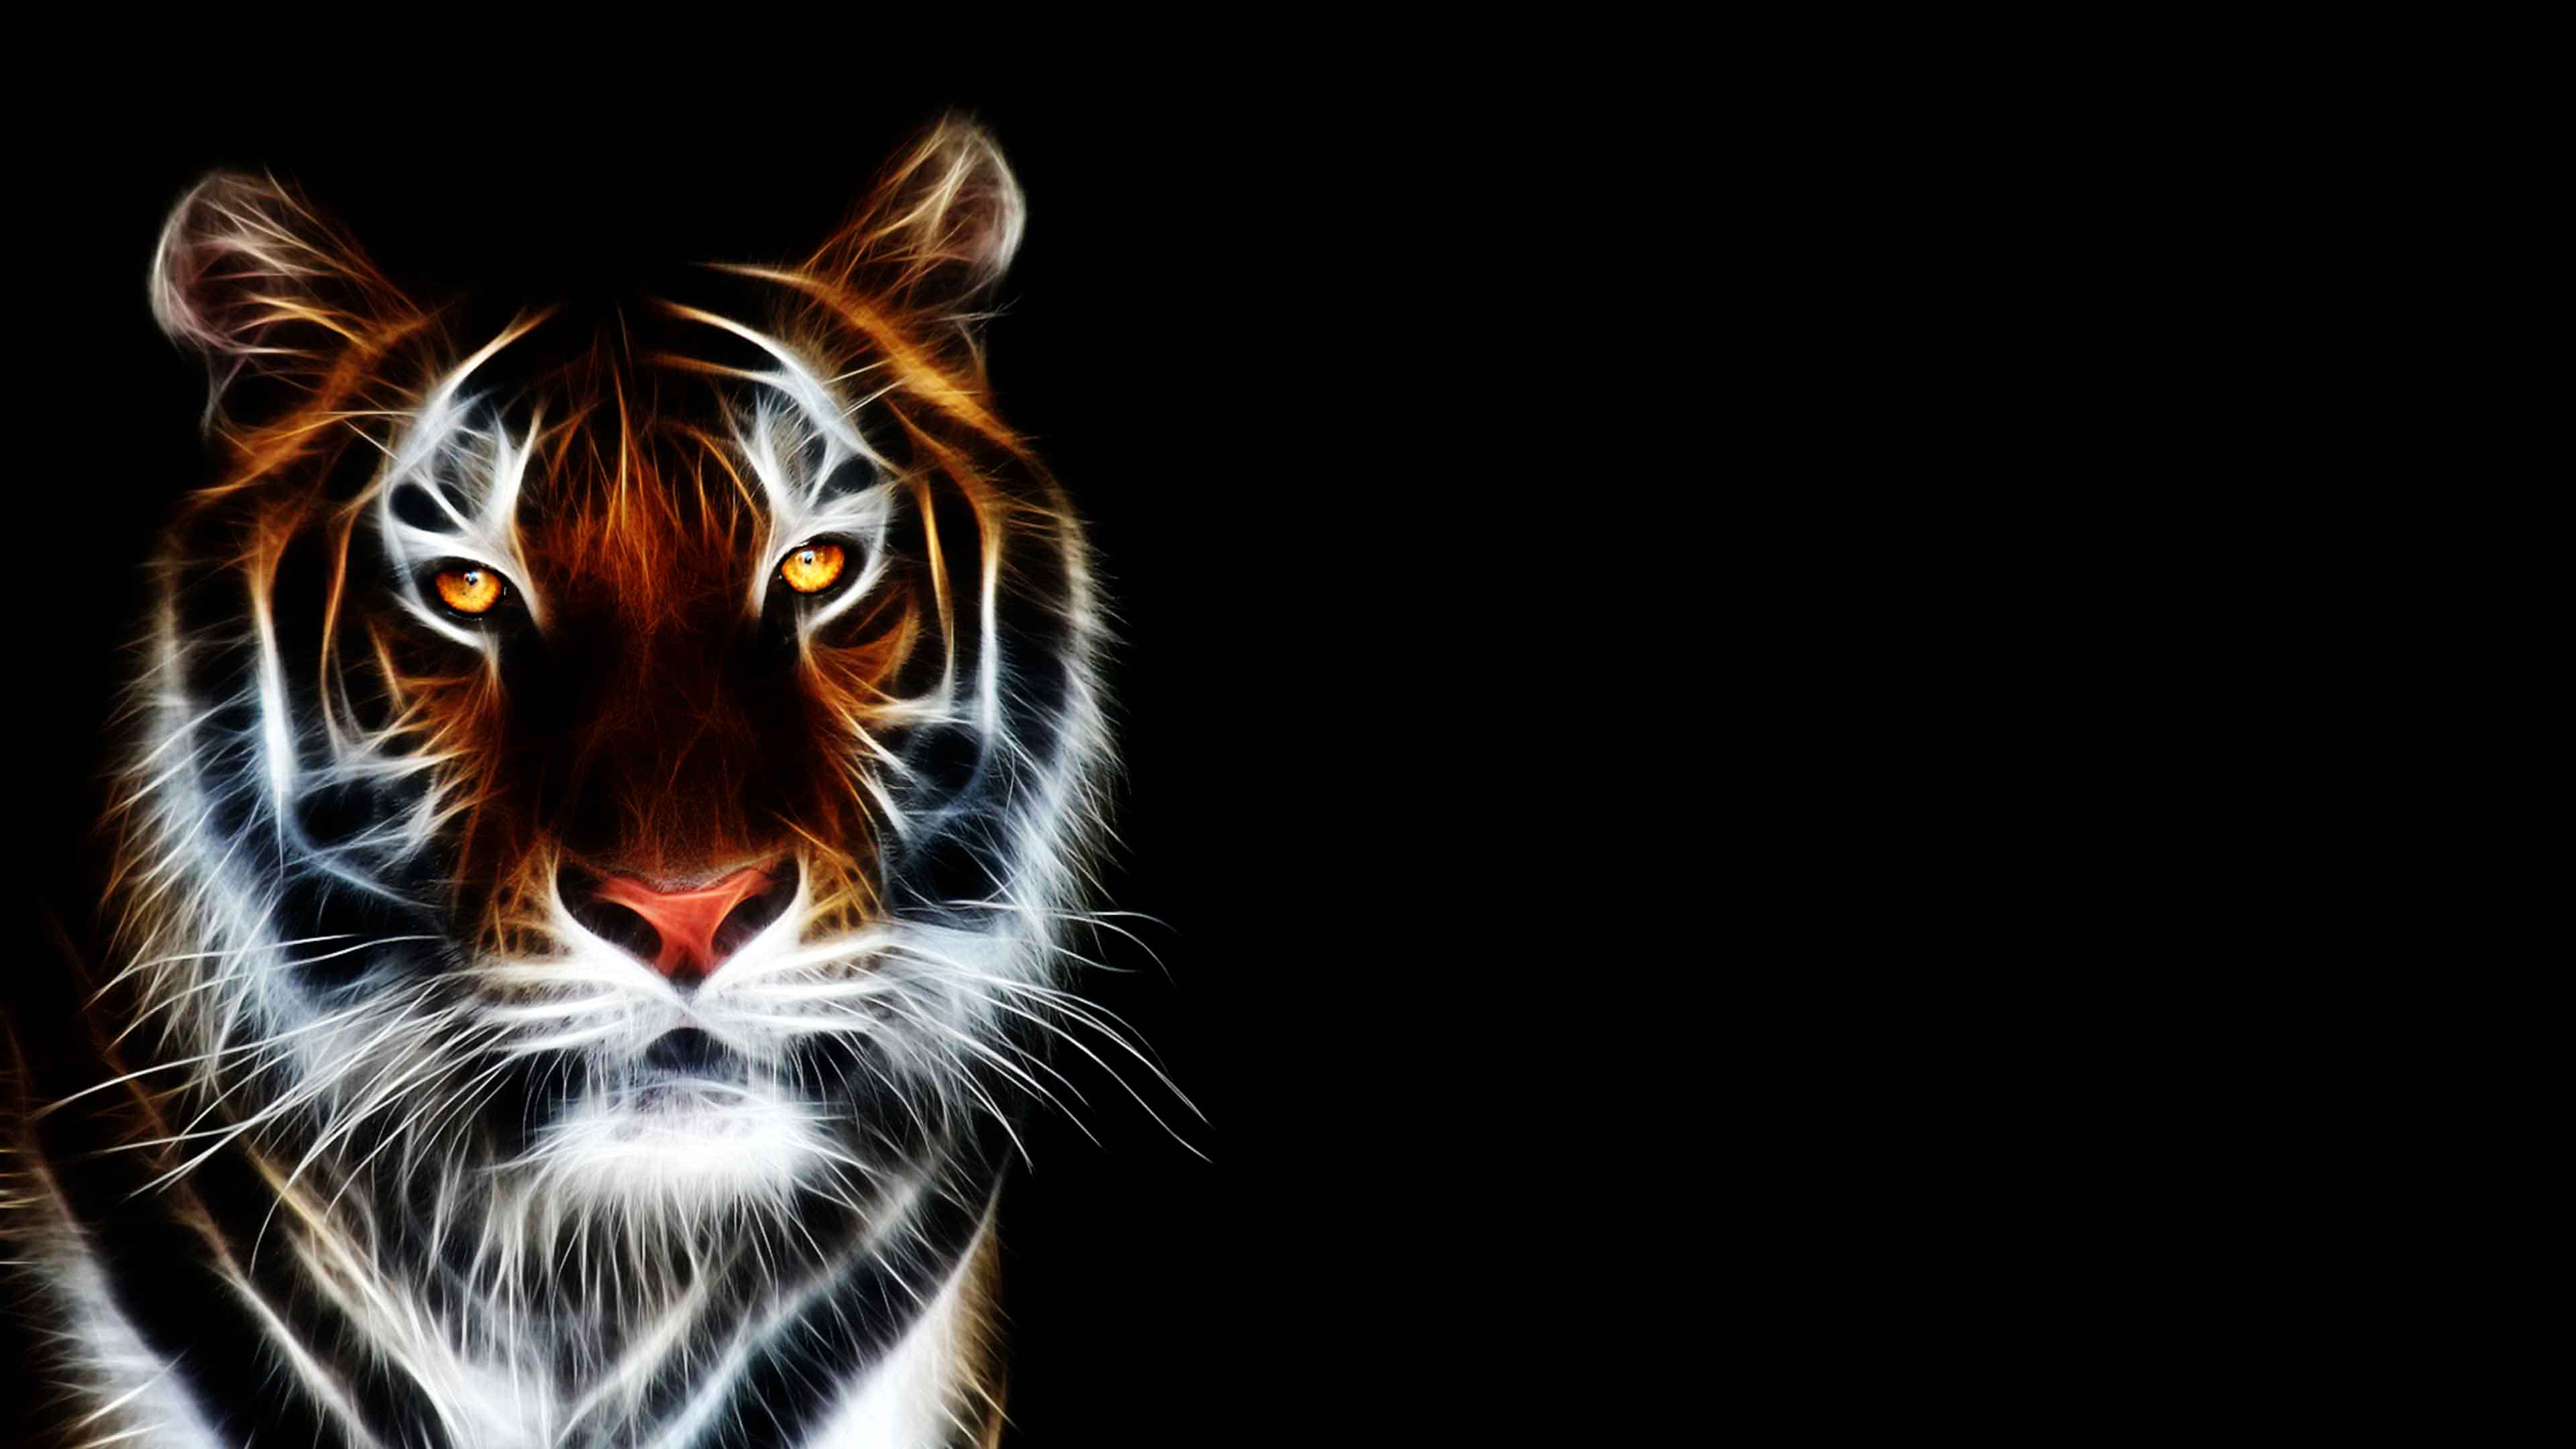 3D Tiger Widescreen Wallpaper 22785